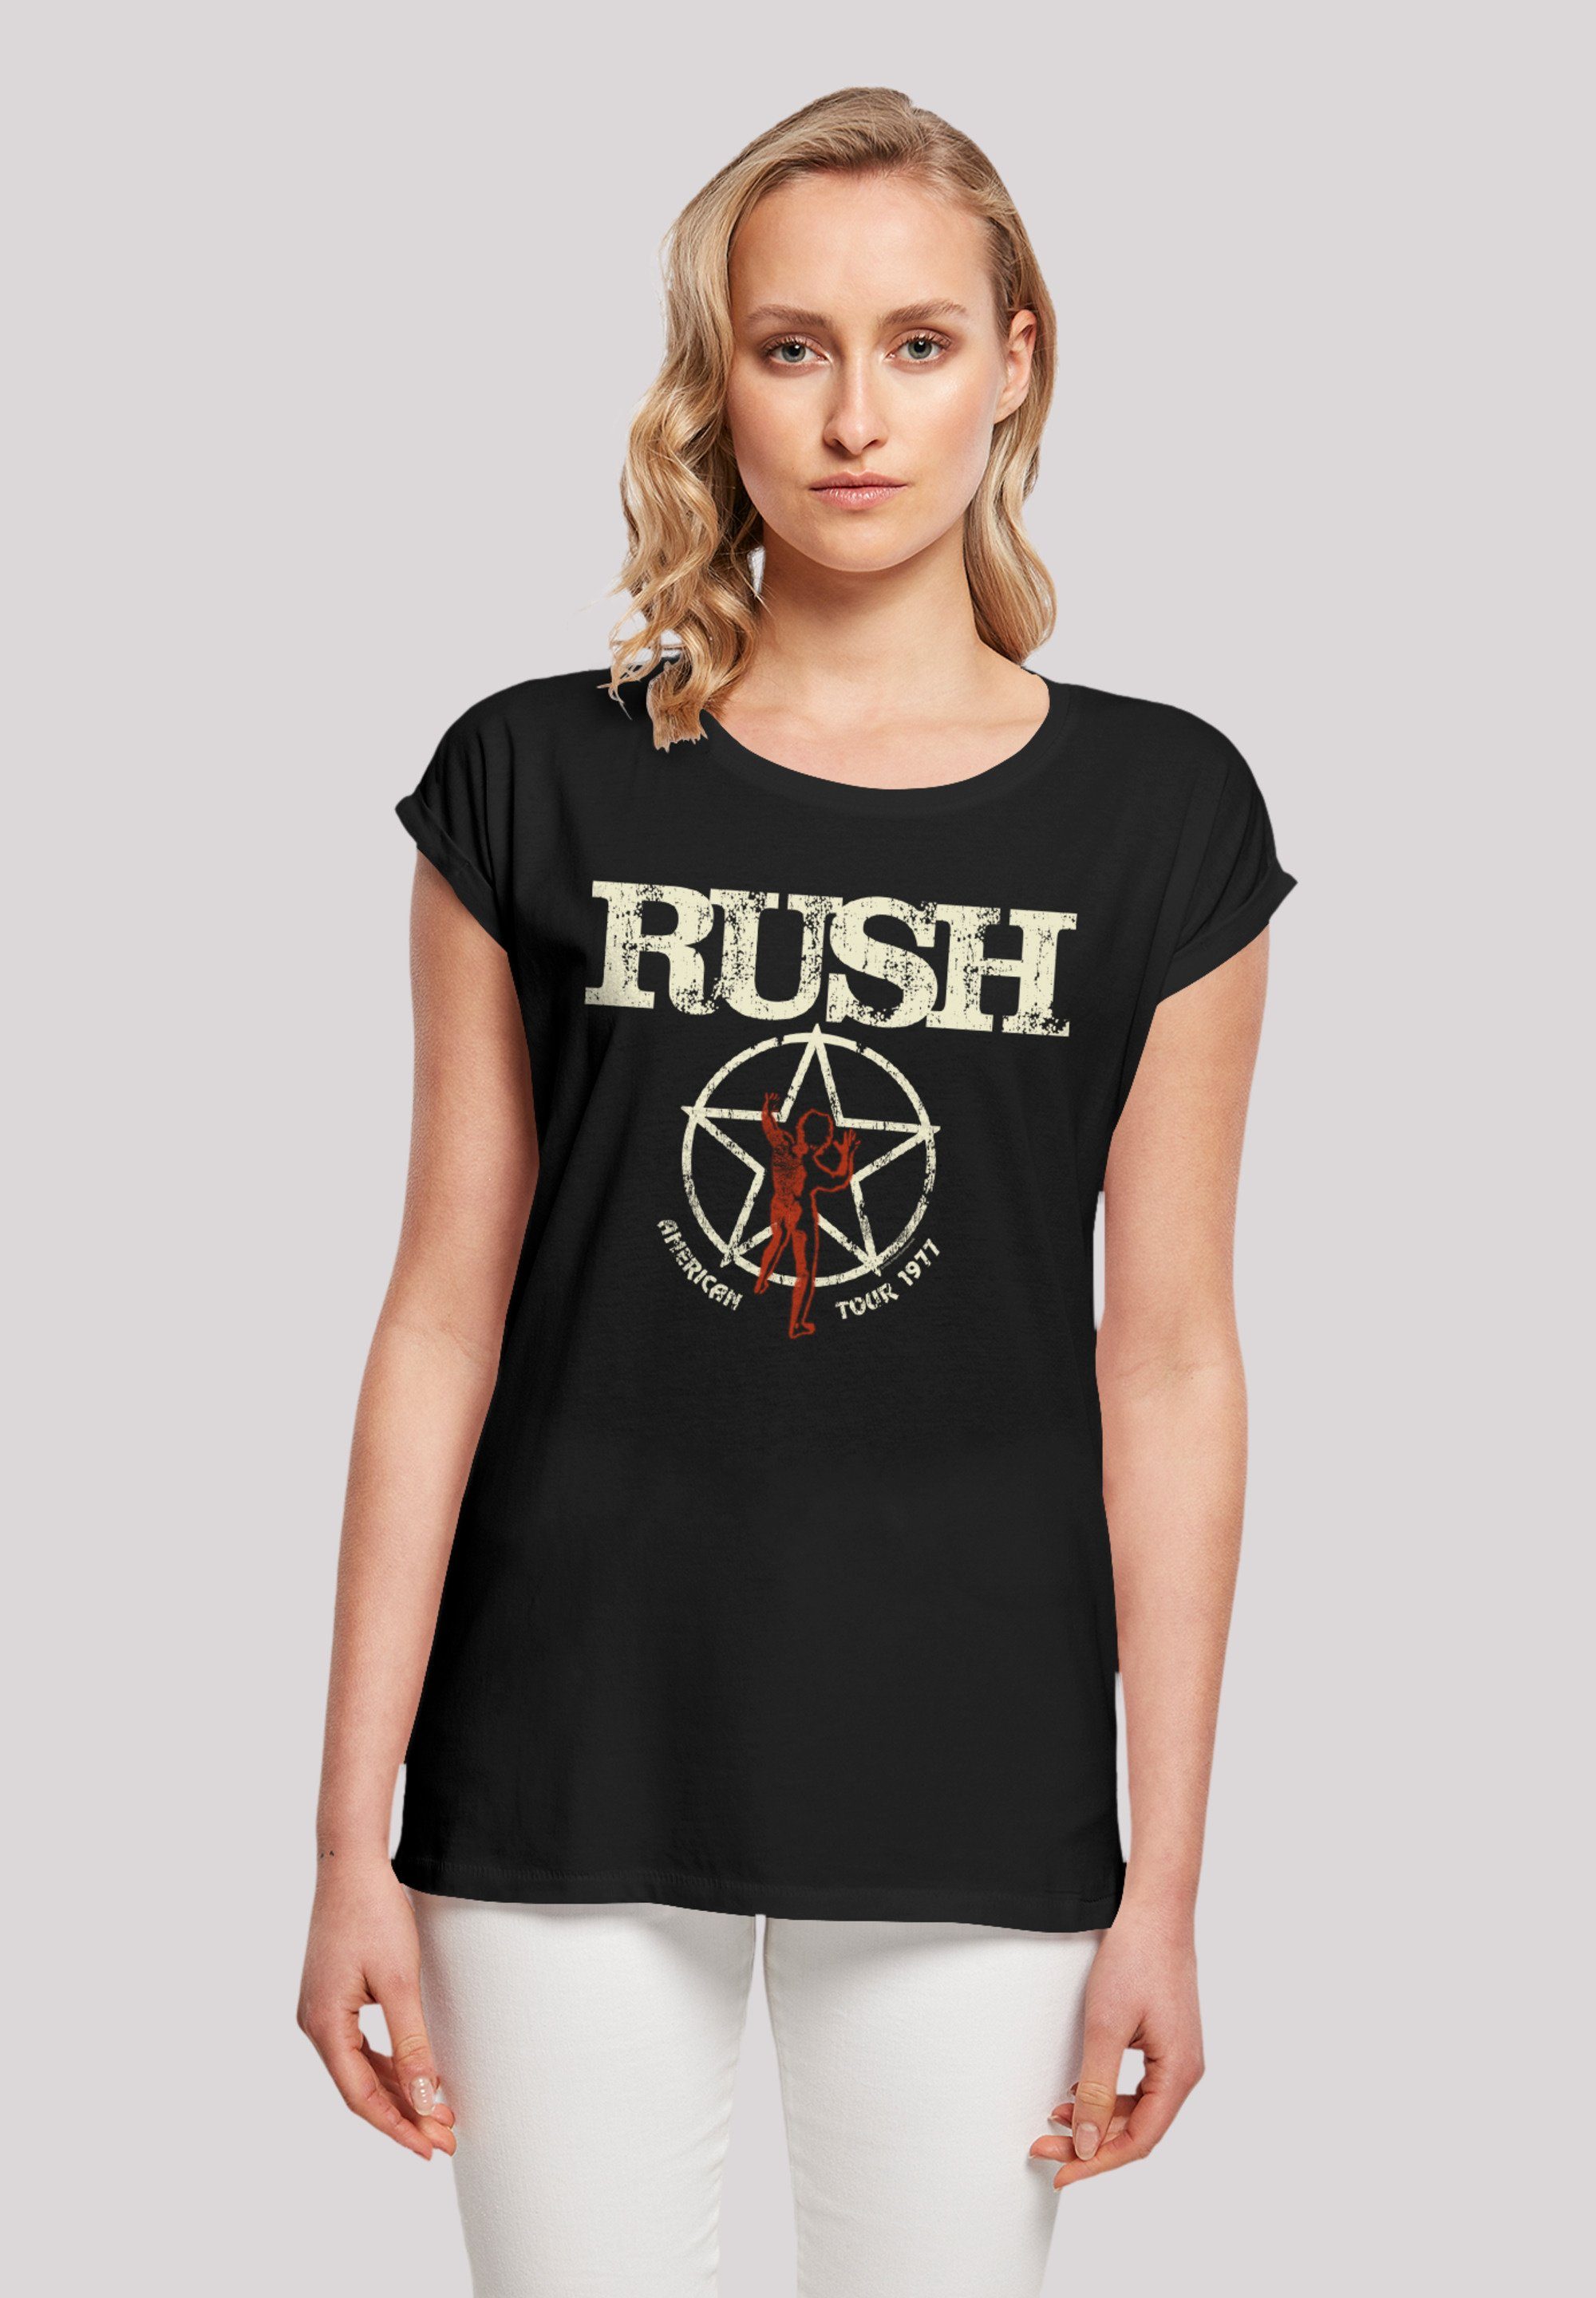 F4NT4STIC T-Shirt Rush Rock Band American mit Qualität, Sehr hohem Baumwollstoff Tour Tragekomfort weicher Premium 1977